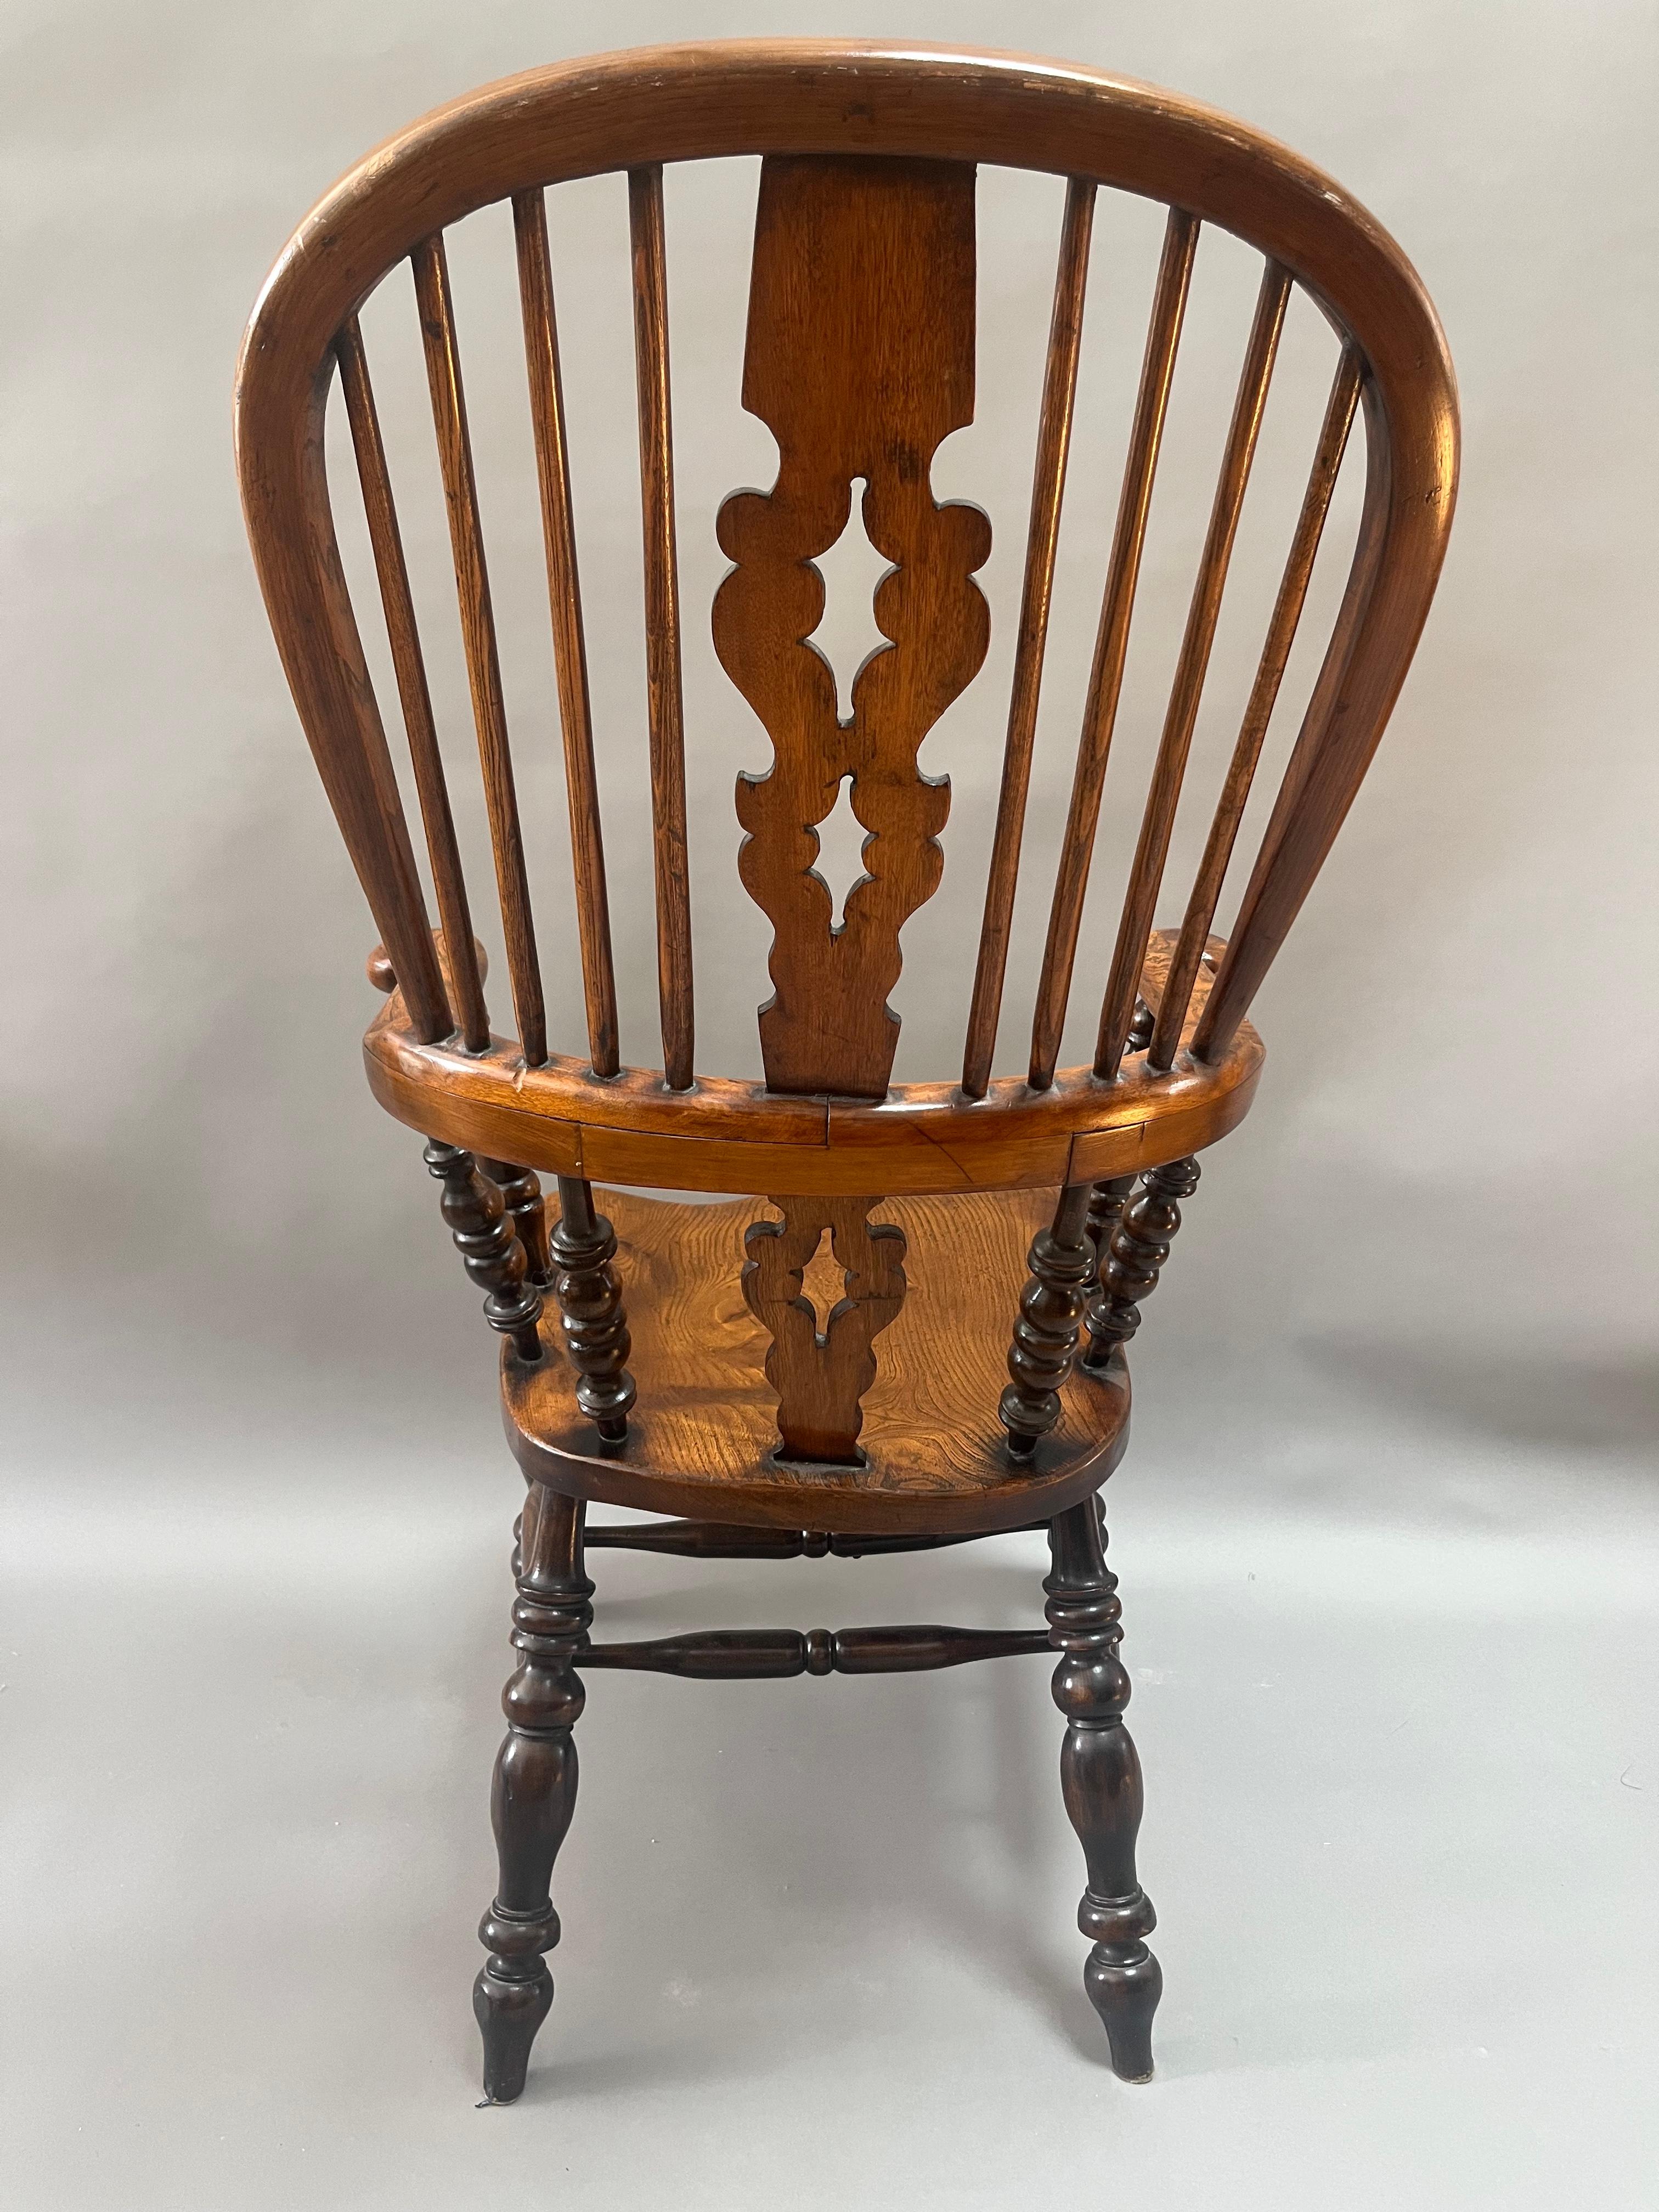 Paire similaire de fauteuils Windsor anglais à dossier à nœud de style George III.   Qualité fine  Des proportions élégantes et un grand confort. Fabriqué en bois divers.  Tous ces objets présentent une riche patine et une couleur profonde et